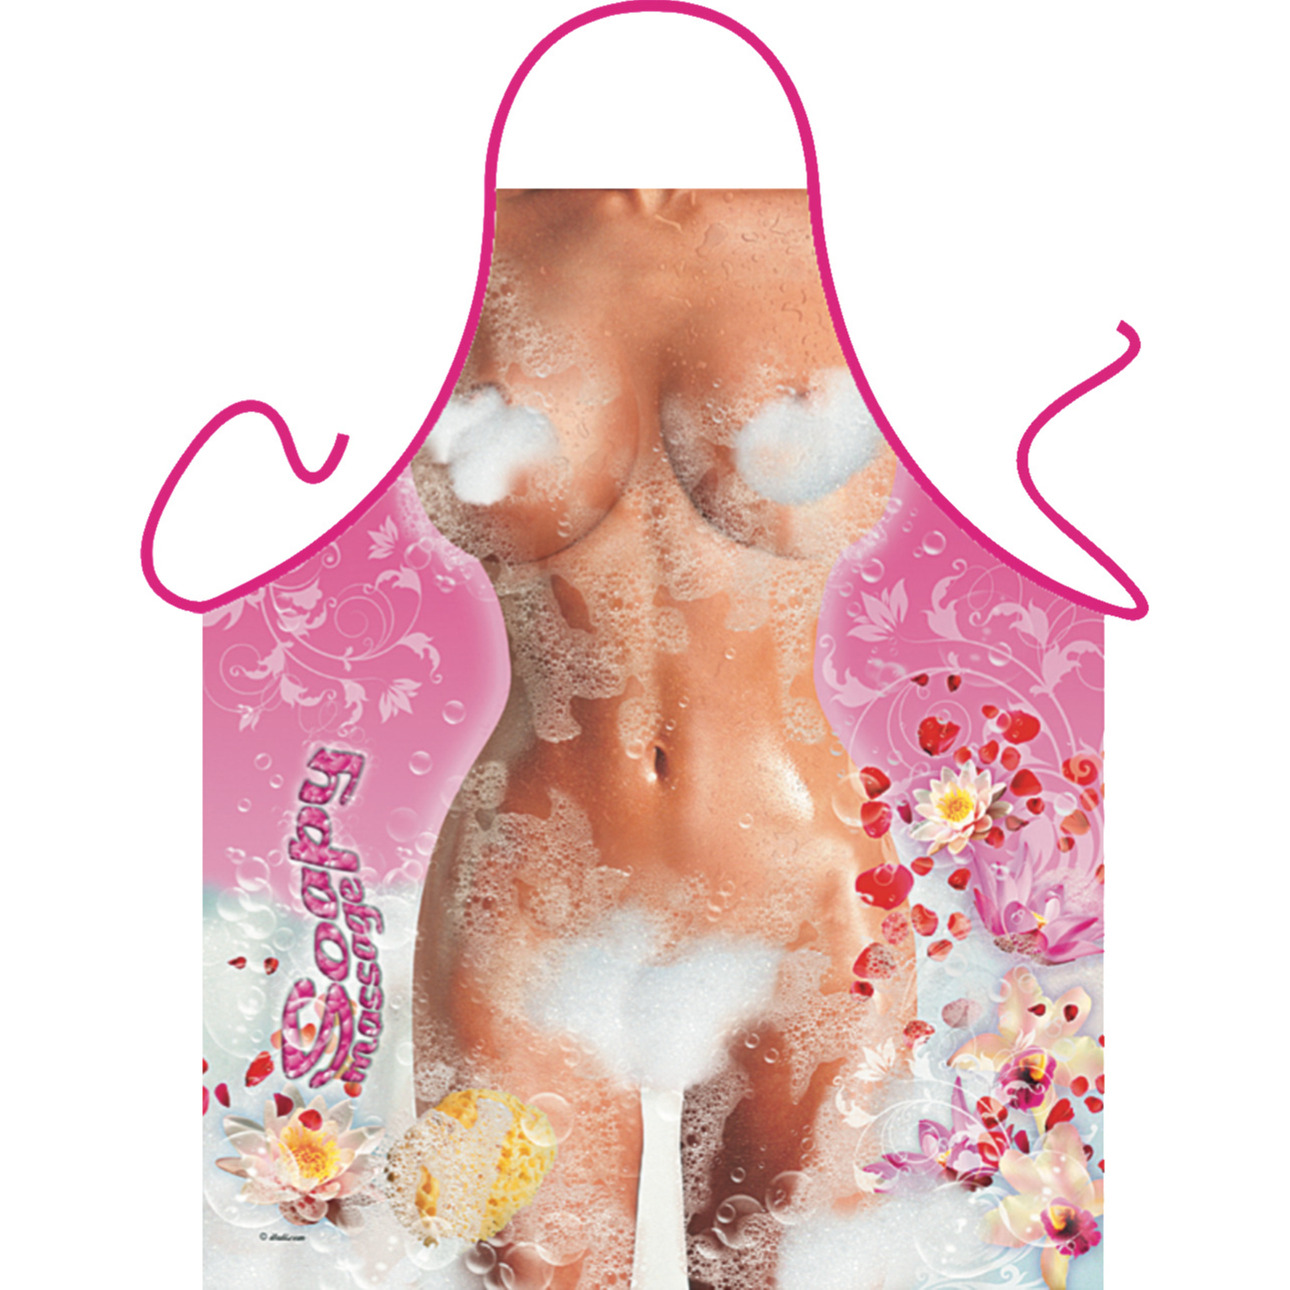 Vrouwelijk lichaam met zeep schorten